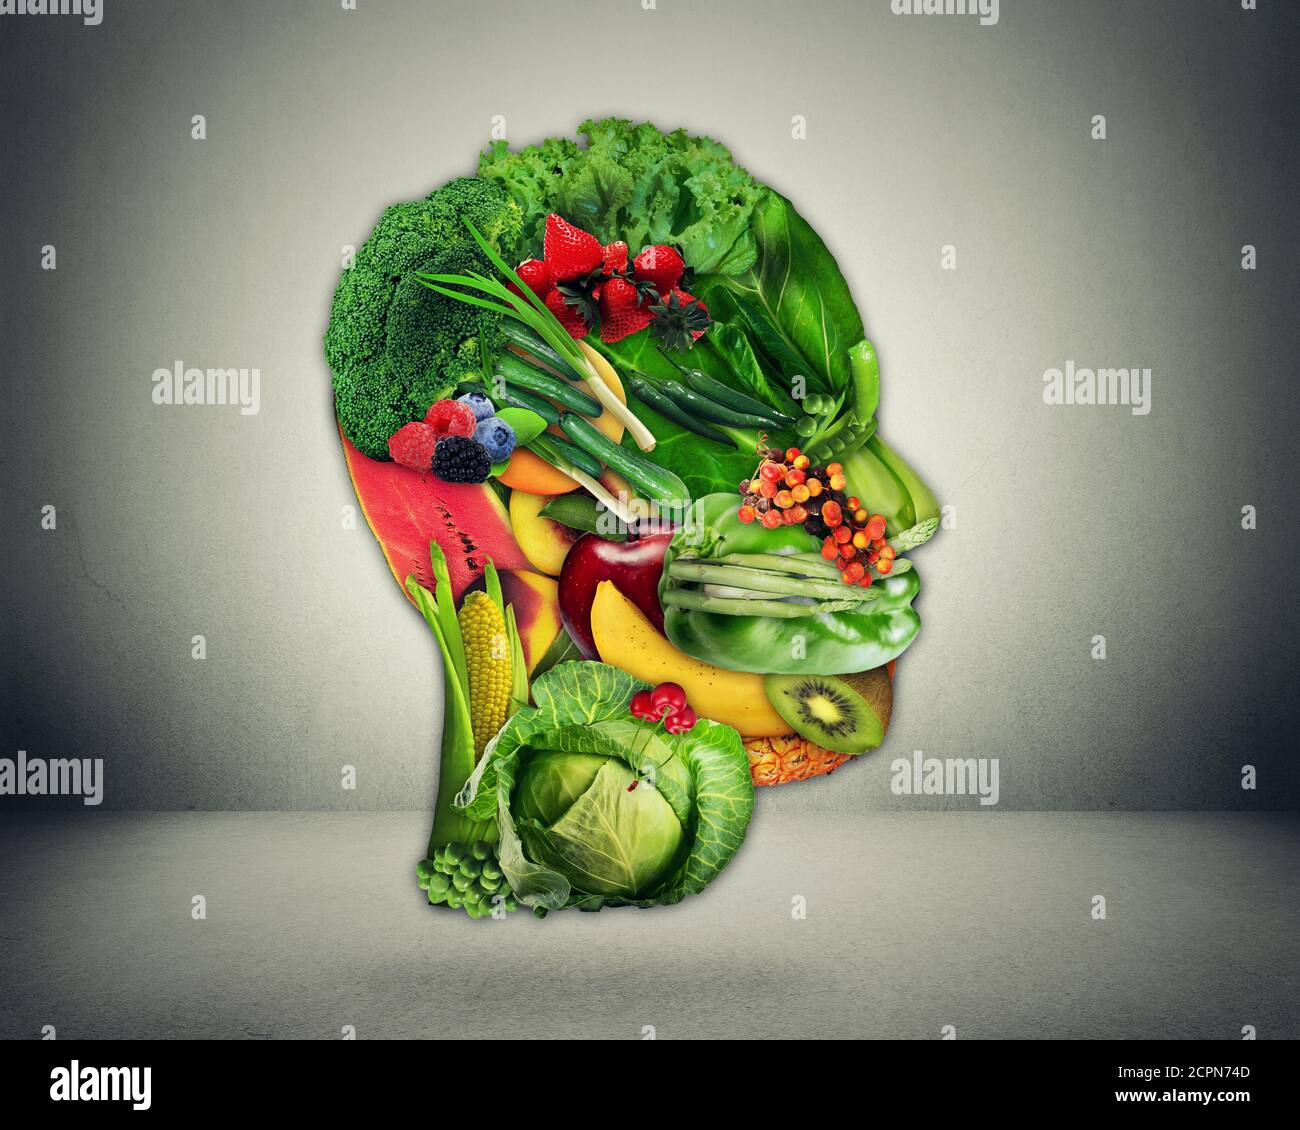 Gesundes Lifestyle-Wahlkonzept. Frisches grünes Gemüse und Obst, geformt als menschliches Kopfgesicht als Symbol für gute Ernährung. Stockfoto